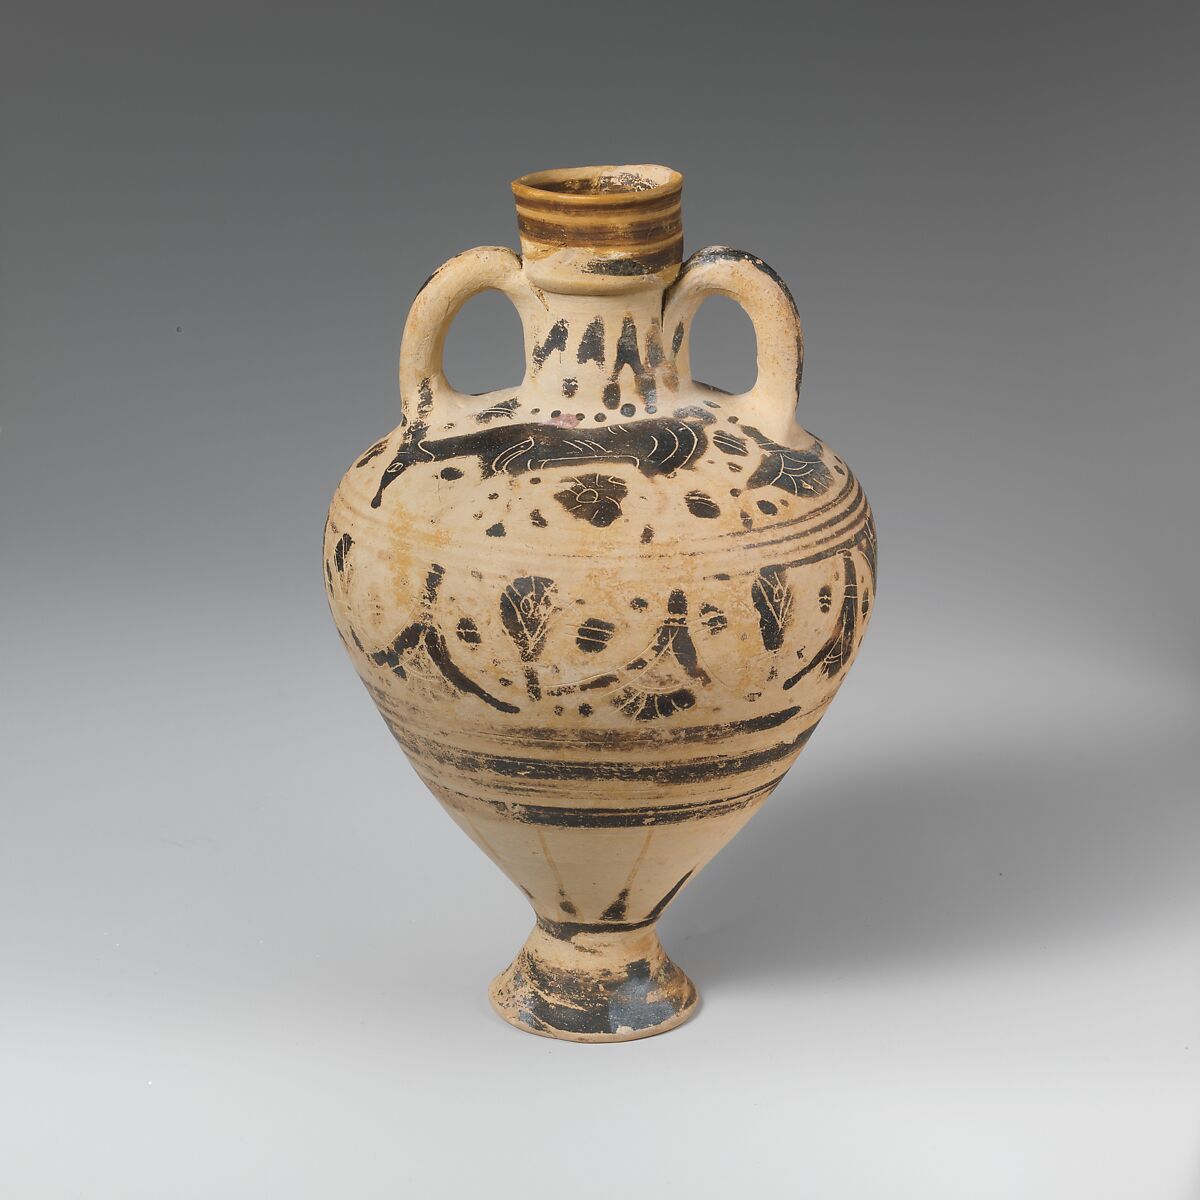 Terracotta amphoriskos (oil flask), Terracotta, Greek, Corinthian 